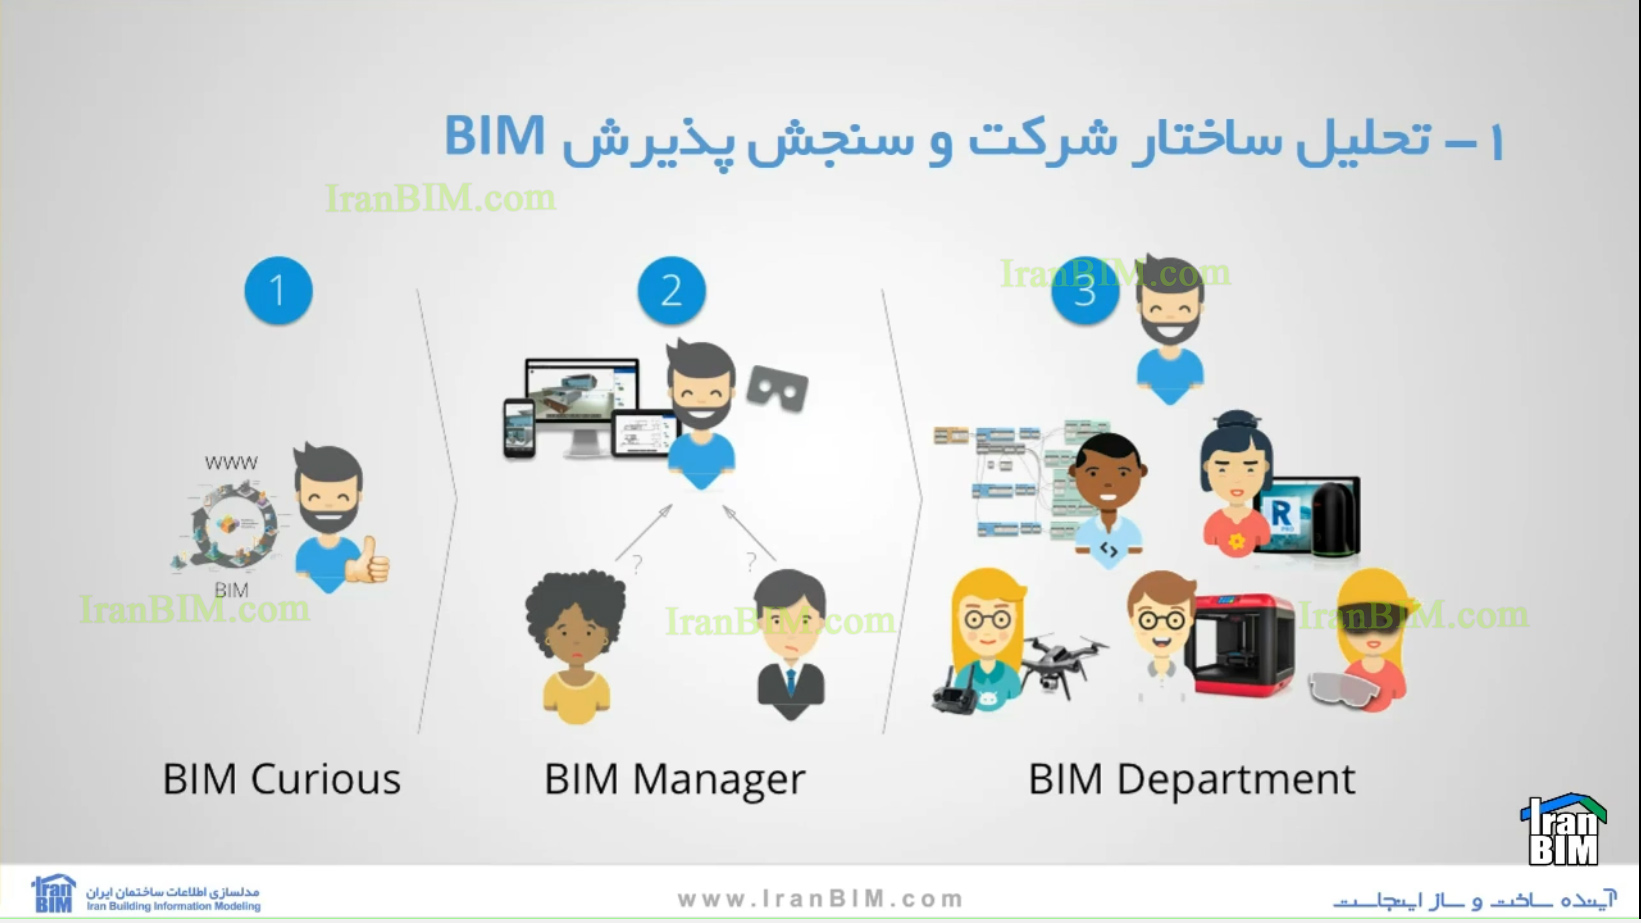 فازهای پیاده سازی BIM در سازمان های پروژه محور